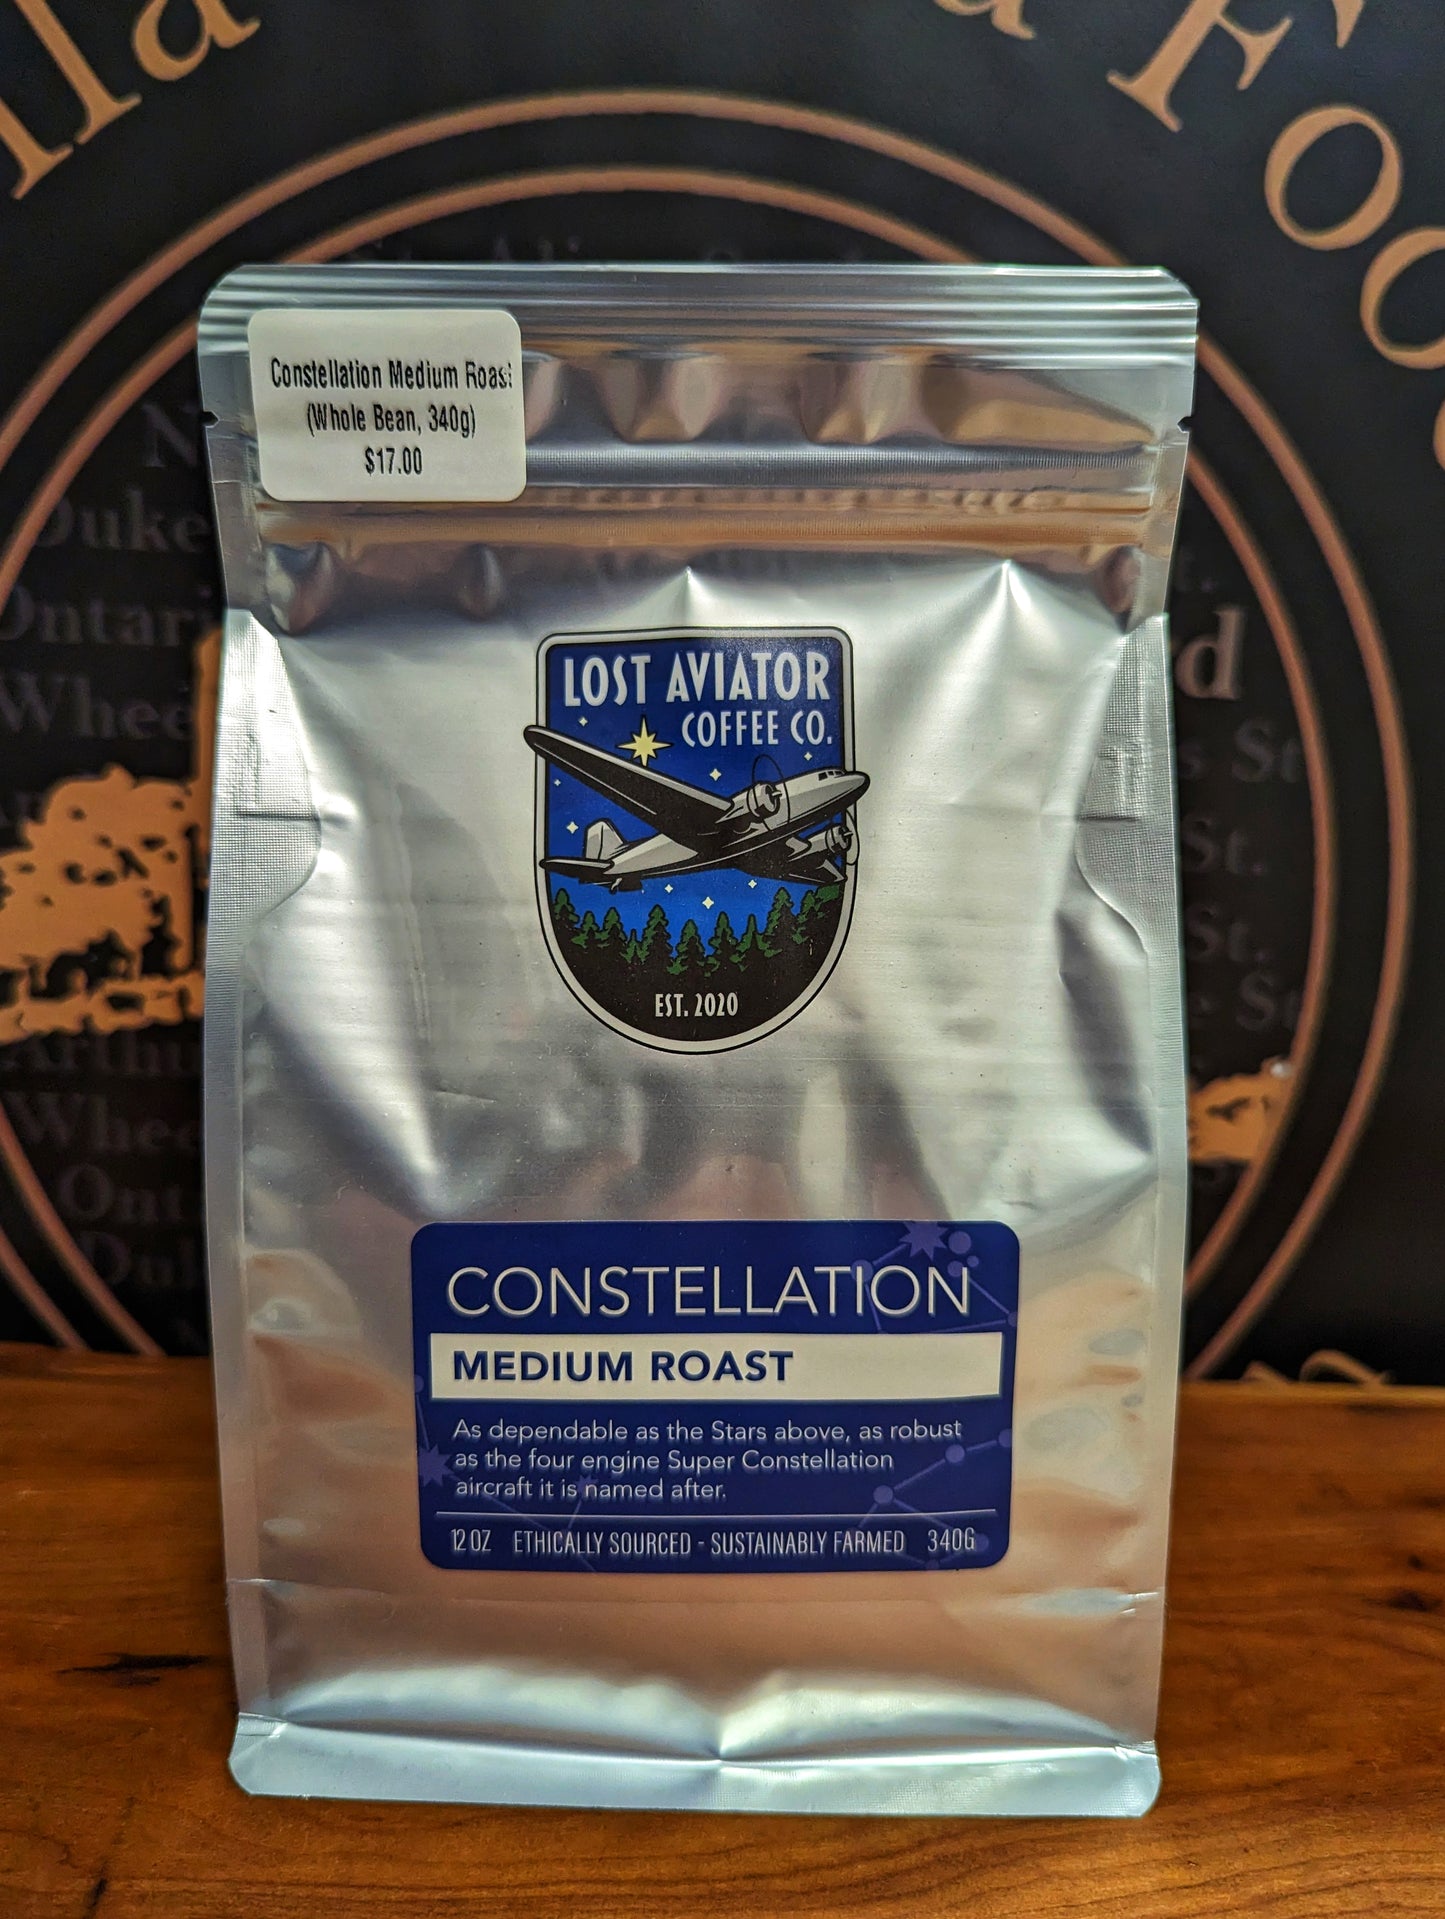 Lost Aviator Constellation Medium Roast Coffee